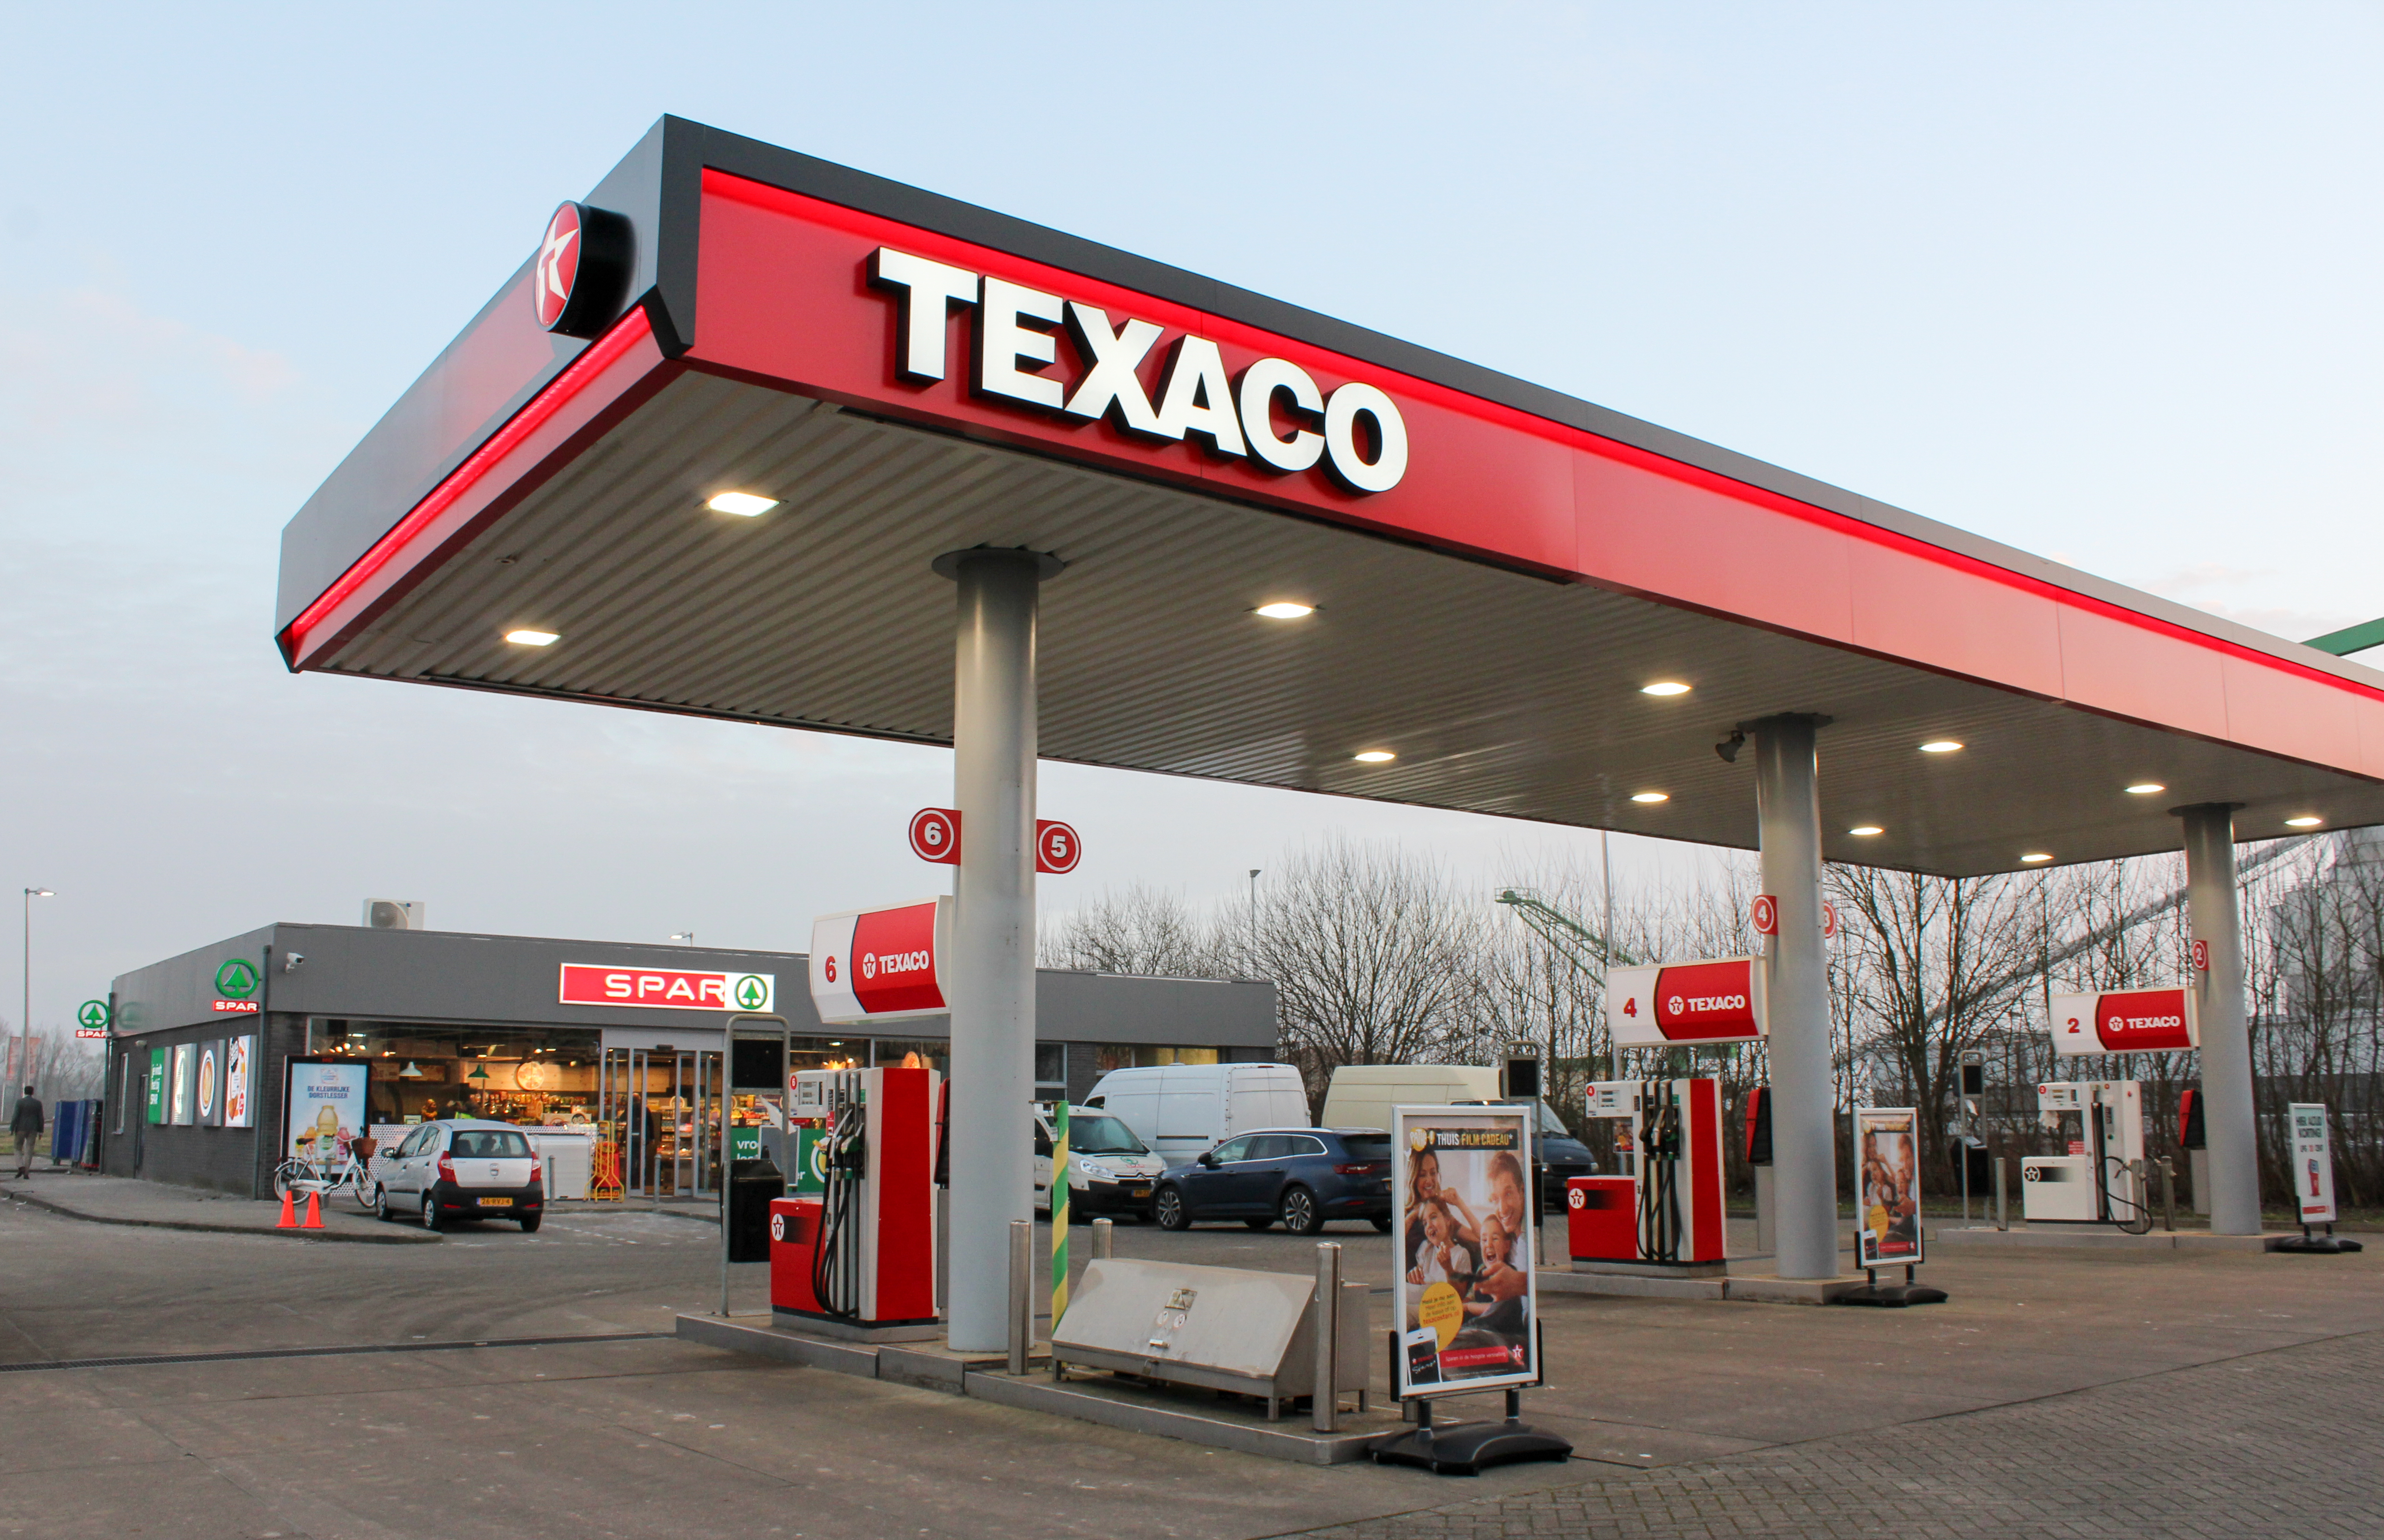 Eerste Spar-shop van Texaco geopend in Geertruidenberg | TankPro.nl